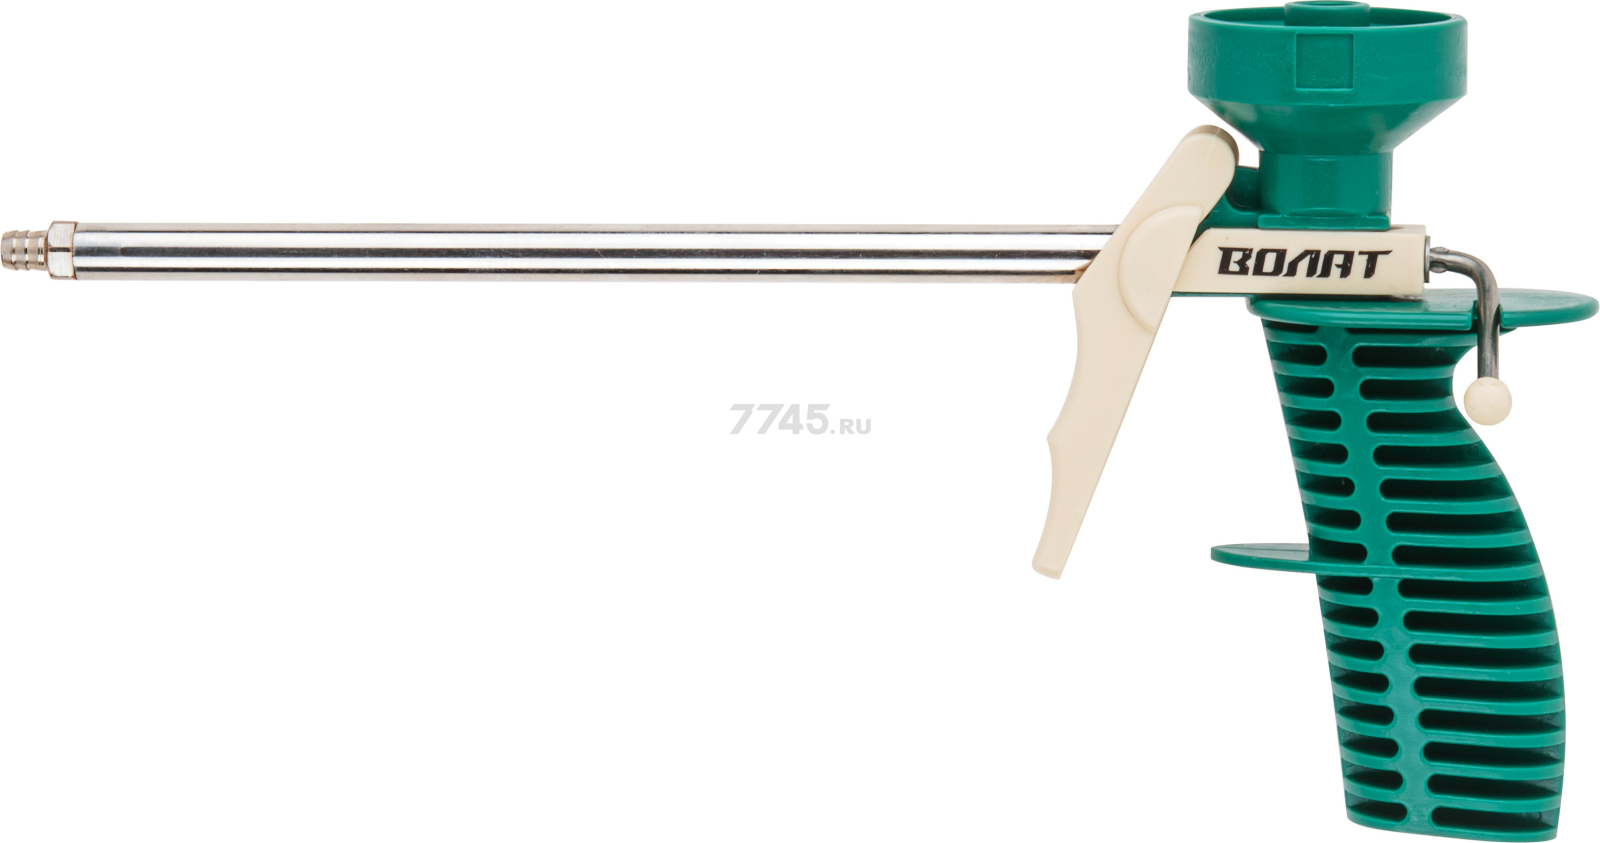 Пистолет для монтажной пены облегченный ВОЛАТ (36020-02)